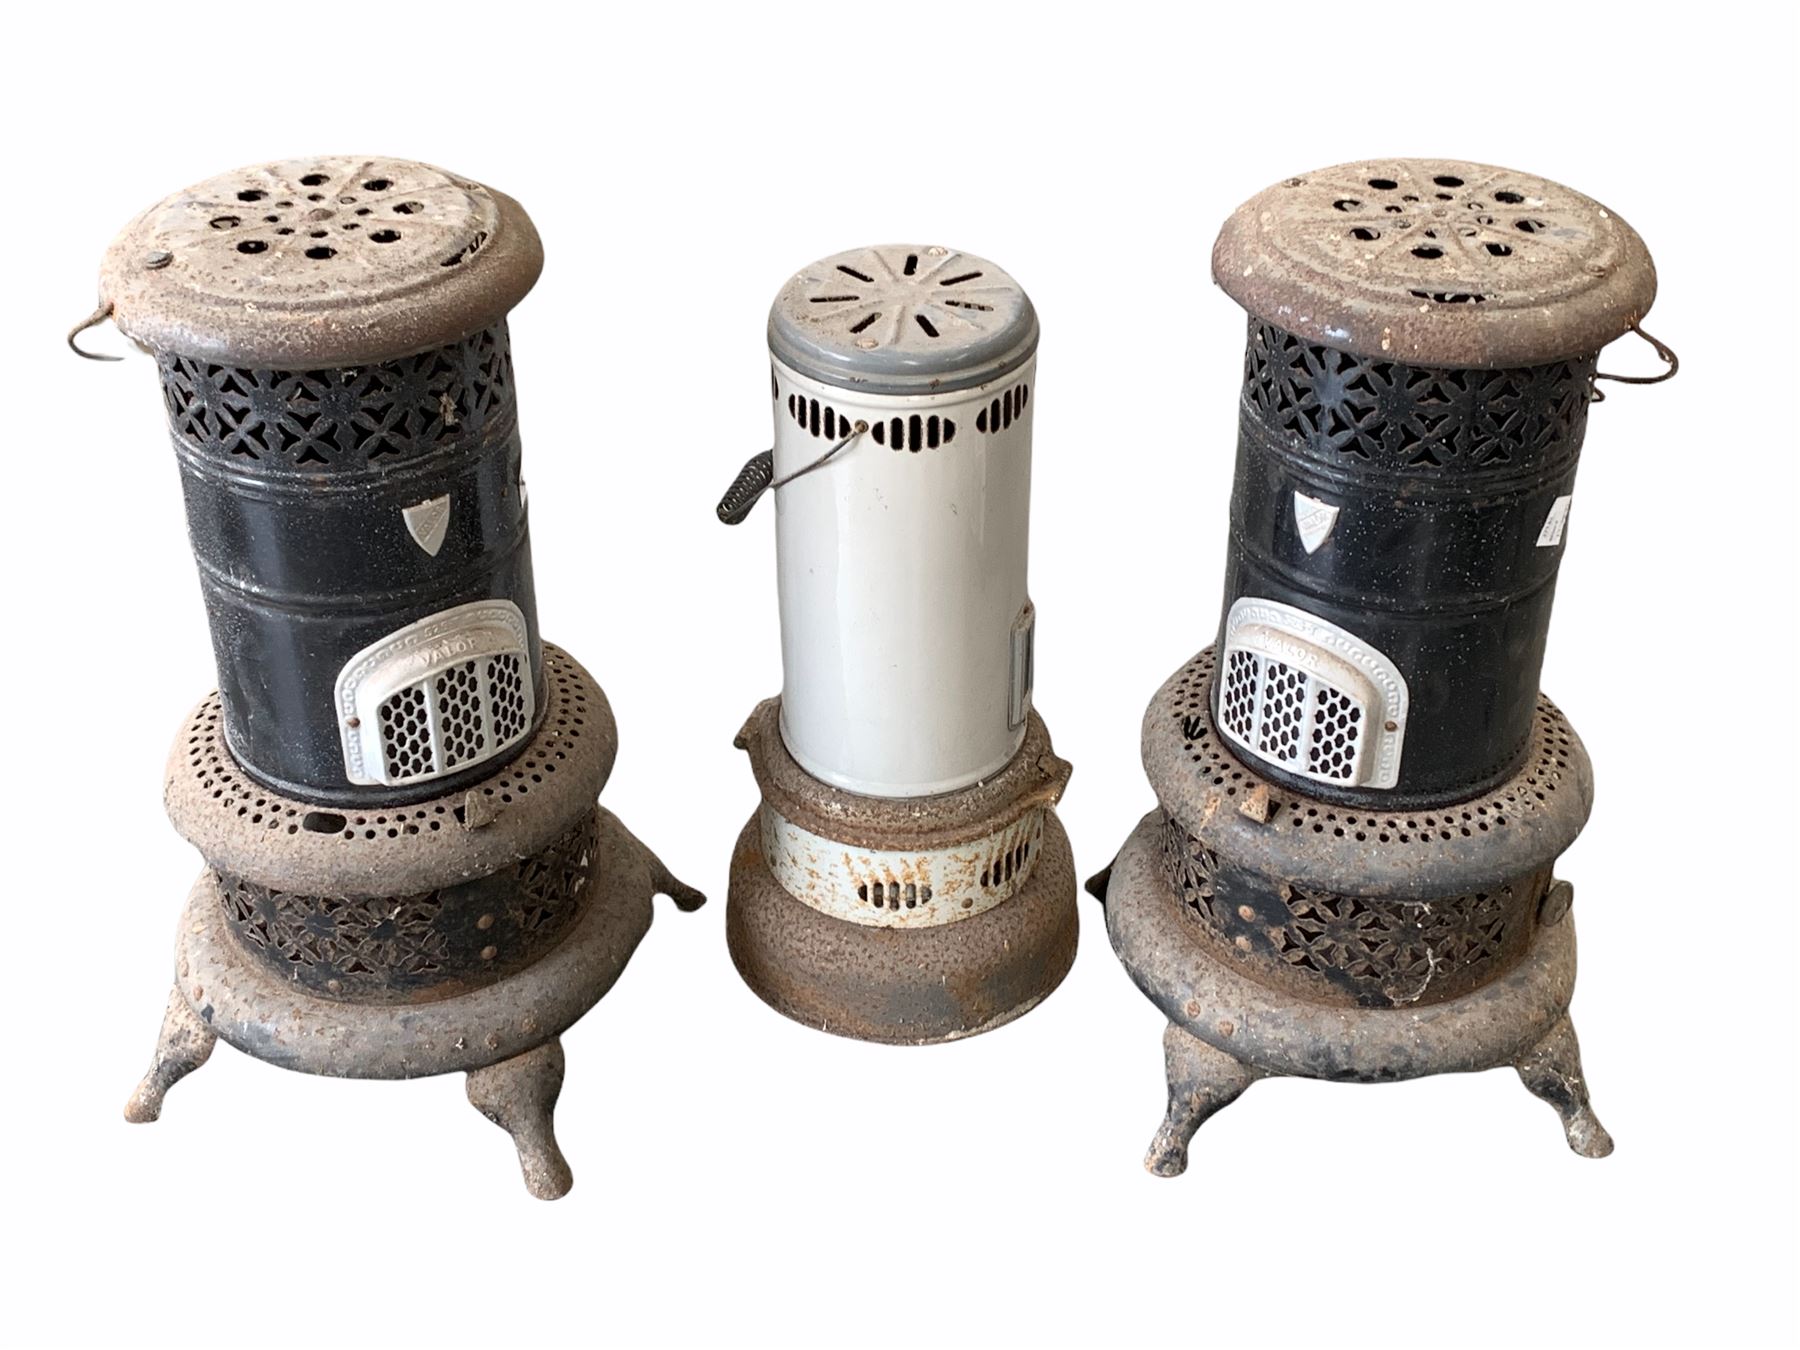 Three paraffin heaters